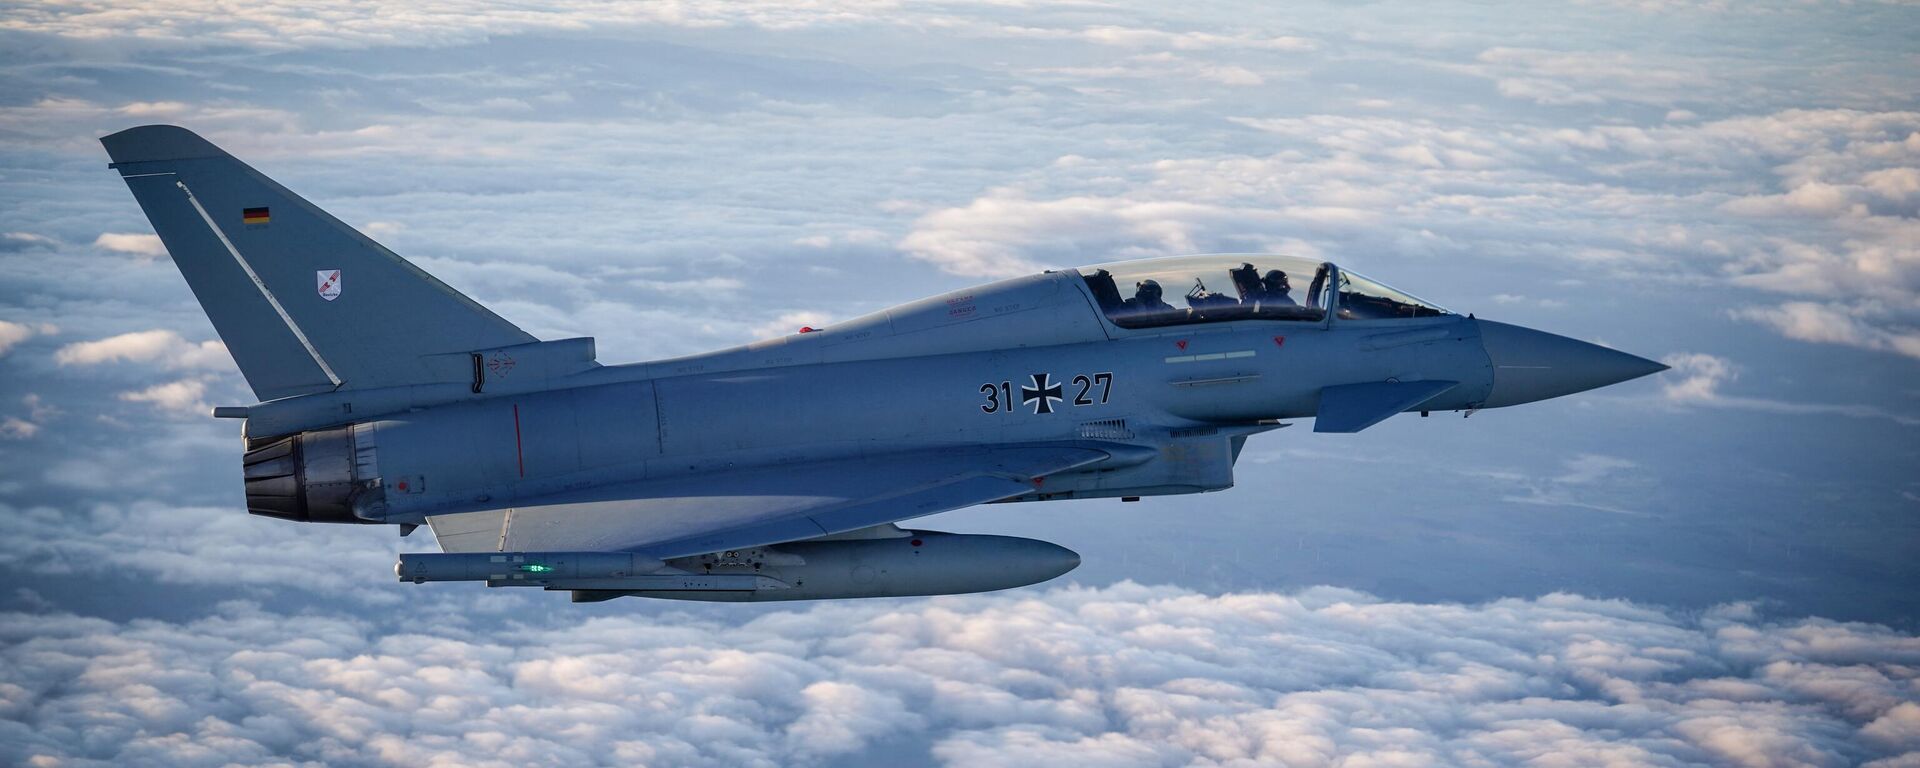 Um jato Eurofighter da Força Aérea acompanha o voo de um Airbus A400M da Força Aérea Alemã que transportava o Chanceler Alemão em direção ao aeroporto militar de Colônia Koeln-Wahn vindo de Berlim Schoenefeld, para participar de uma demonstração de capacidade militar, em 23 de outubro de 2023 - Sputnik Brasil, 1920, 23.11.2023